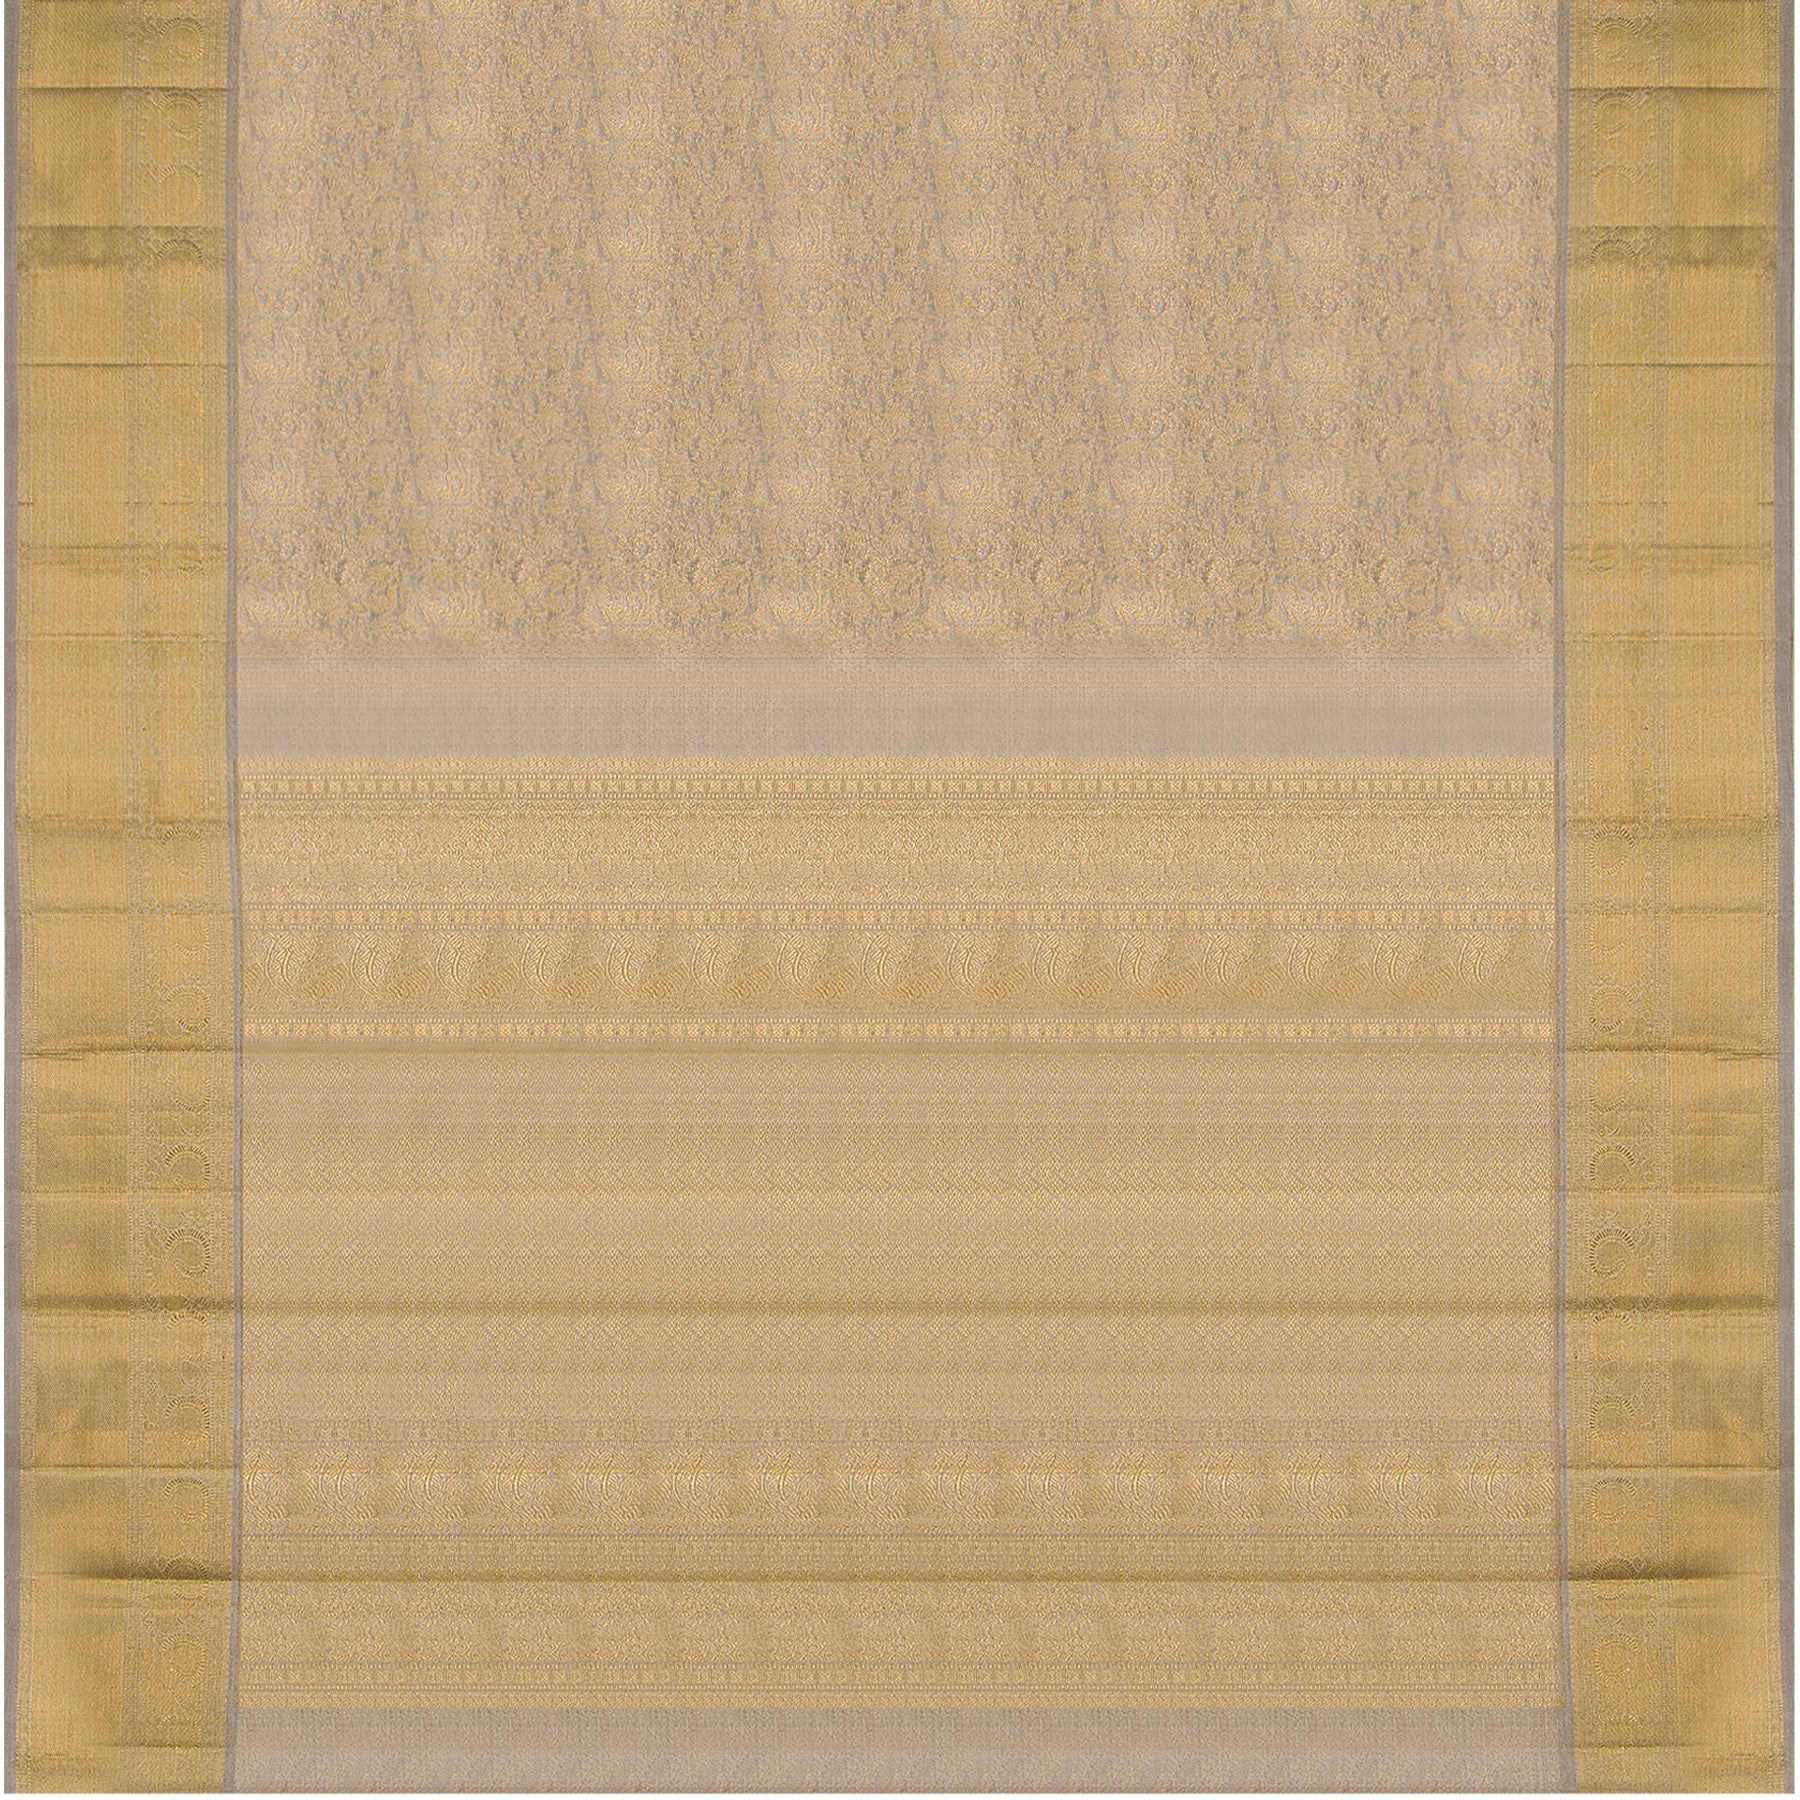 Kanakavalli Kanjivaram Silk Sari 23-110-HS001-09990 - Full View